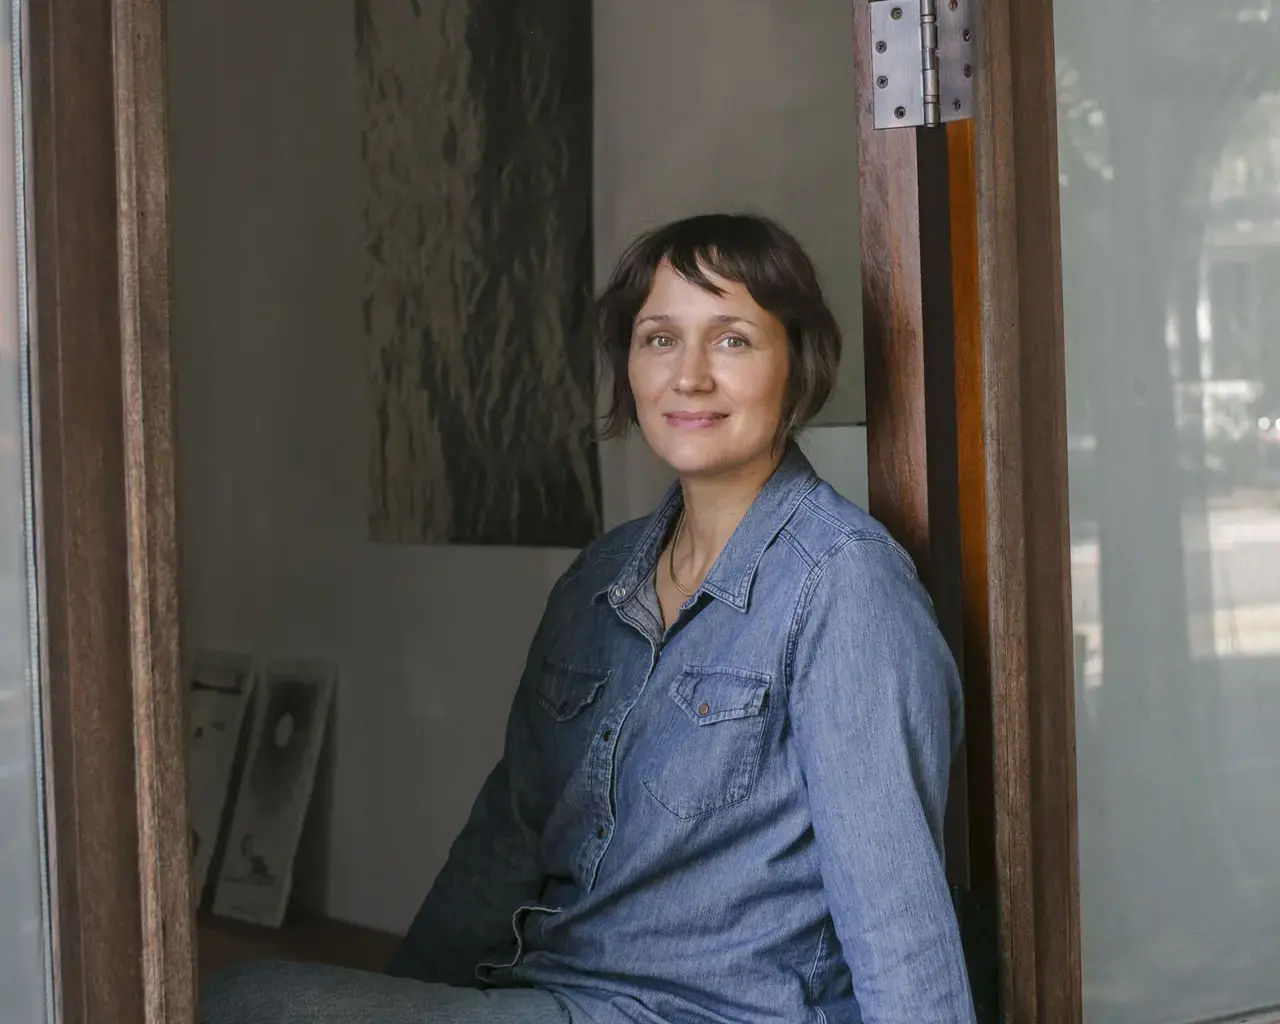 A portrait of Pew Fellow Kristin Neville Taylor sitting in an open window.